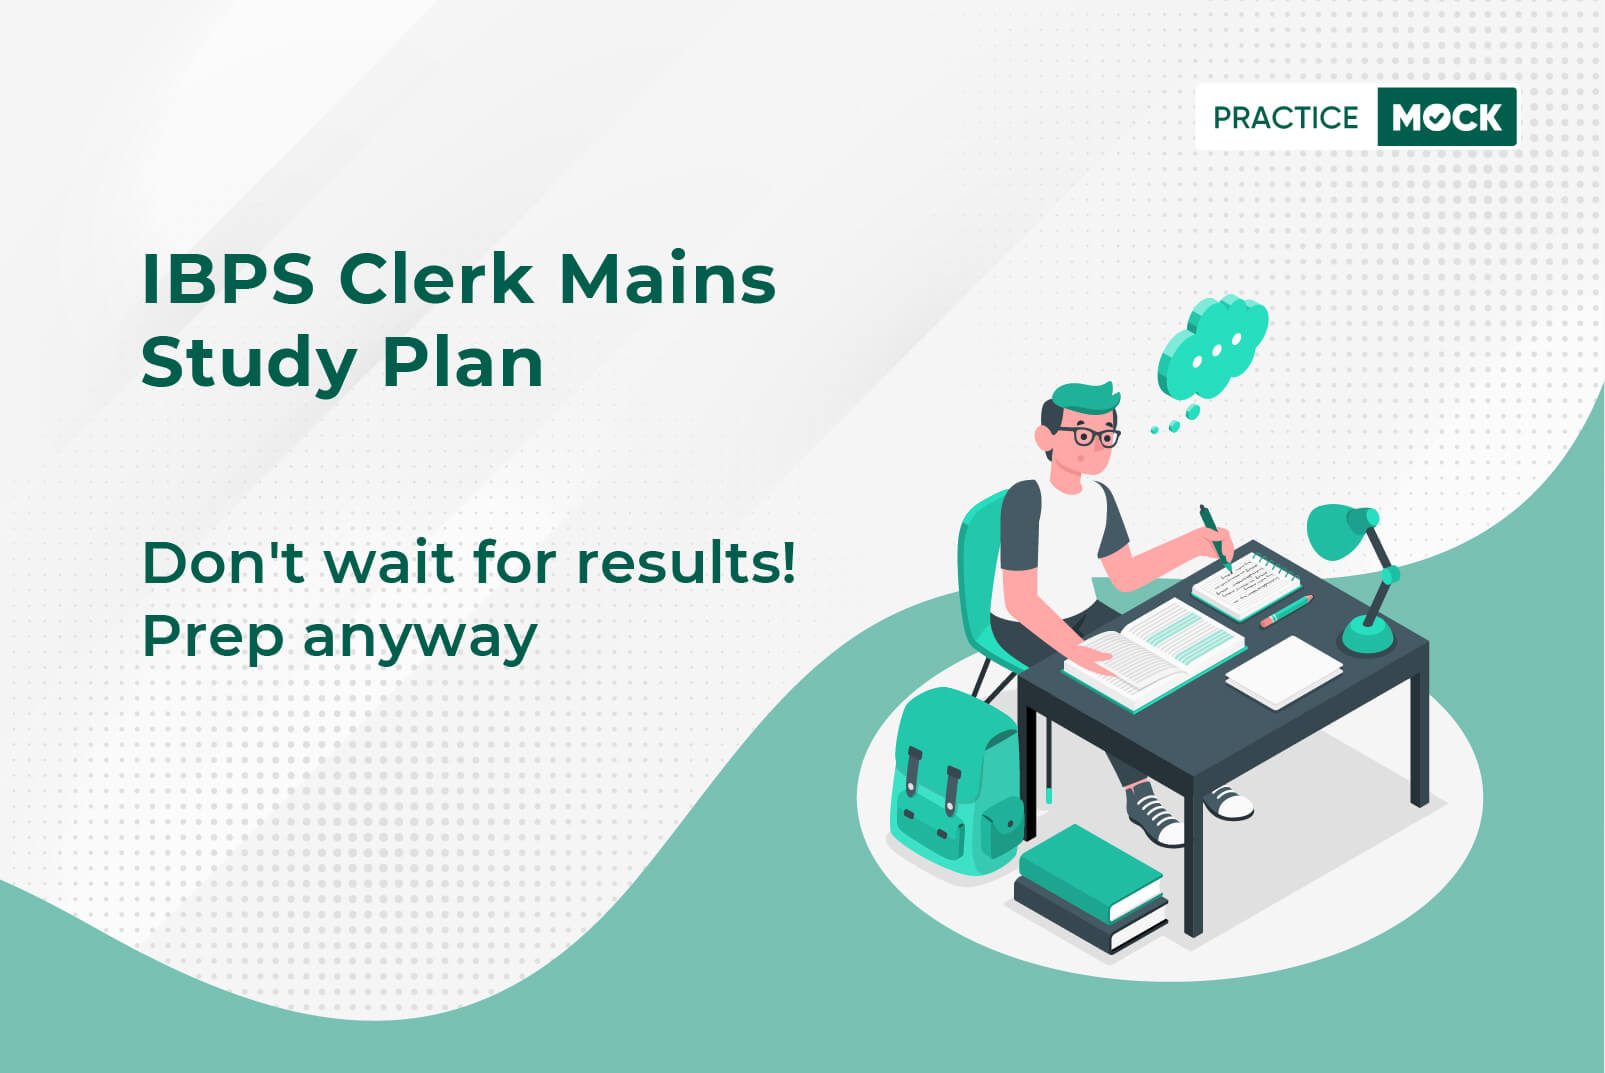 IBPS Clerk Mains Study Plan